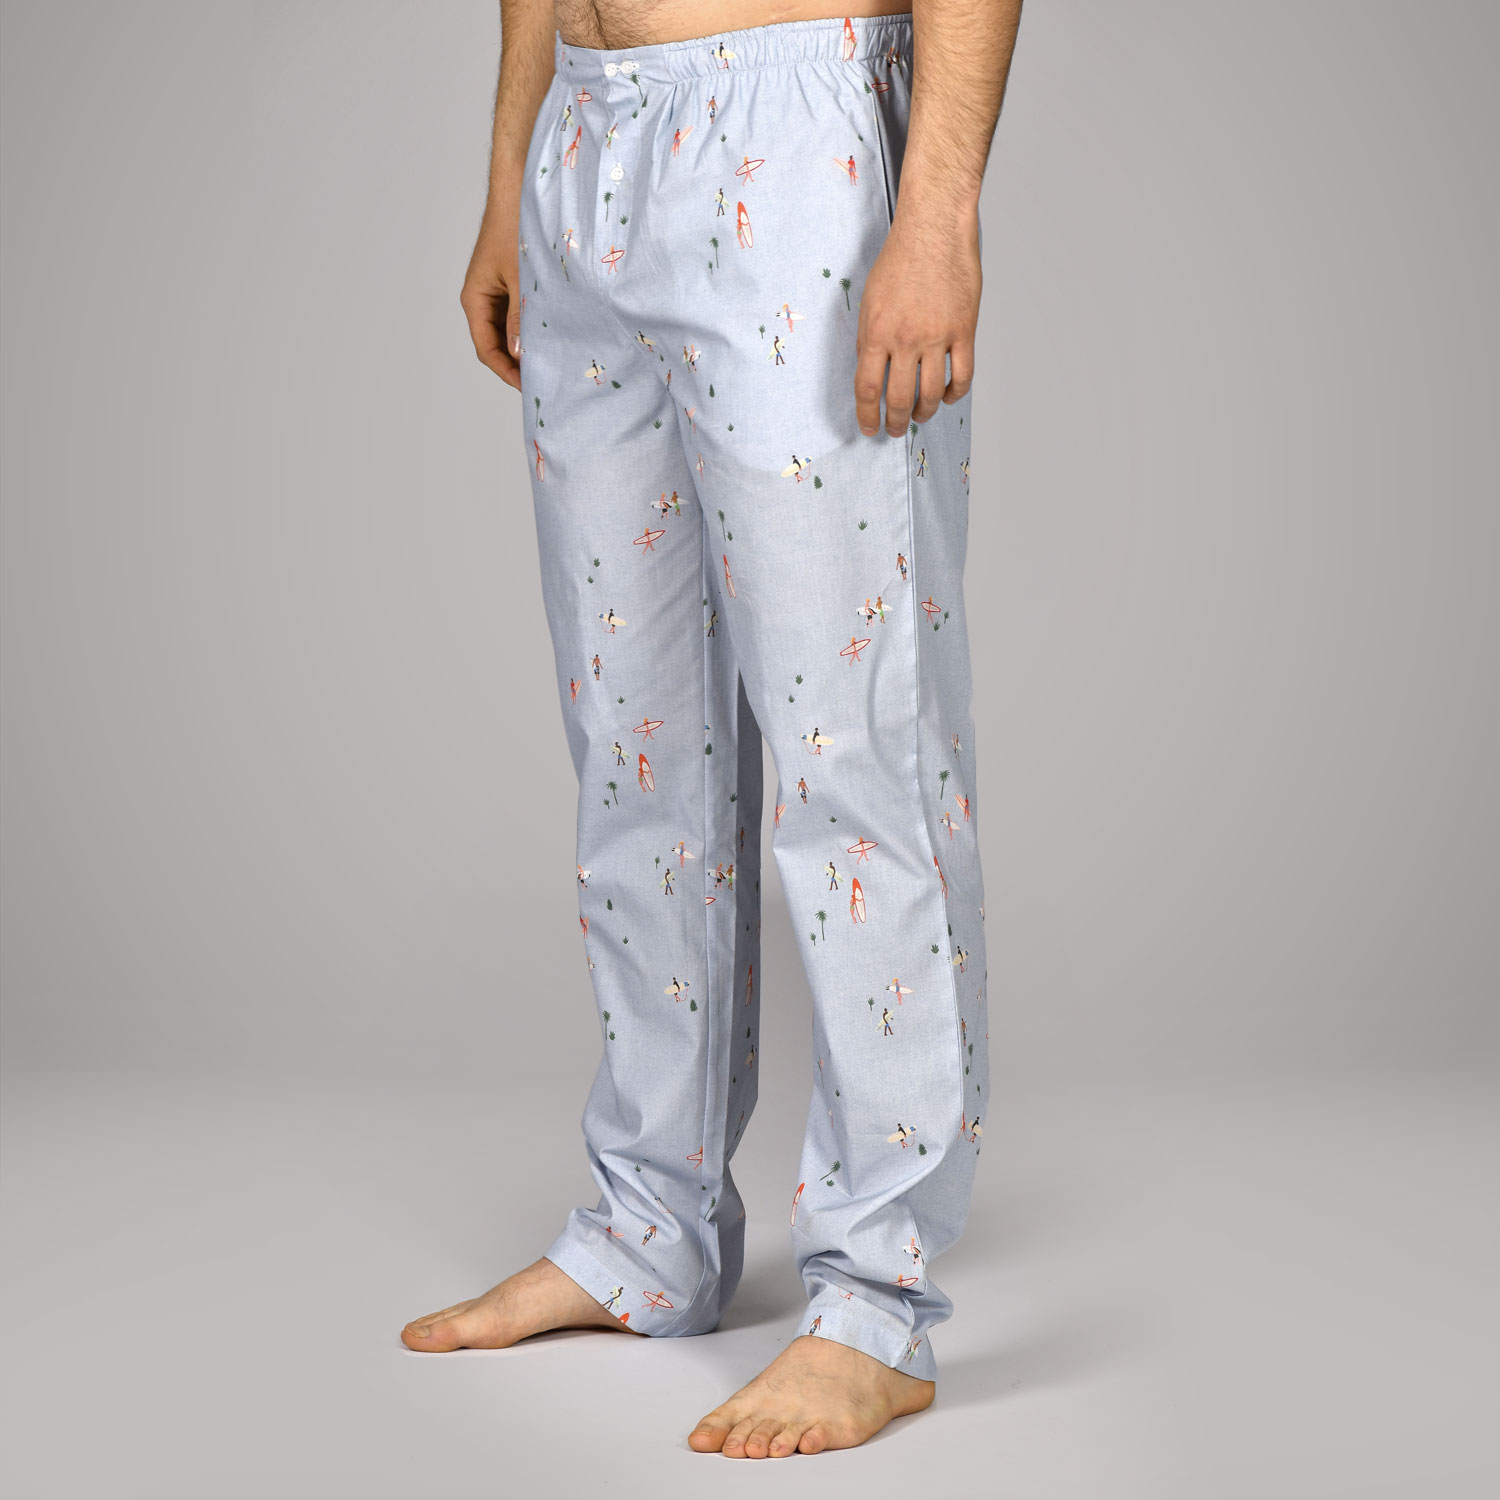 pantalon de pyjama femme a motifs imprime bas de pyjama femme